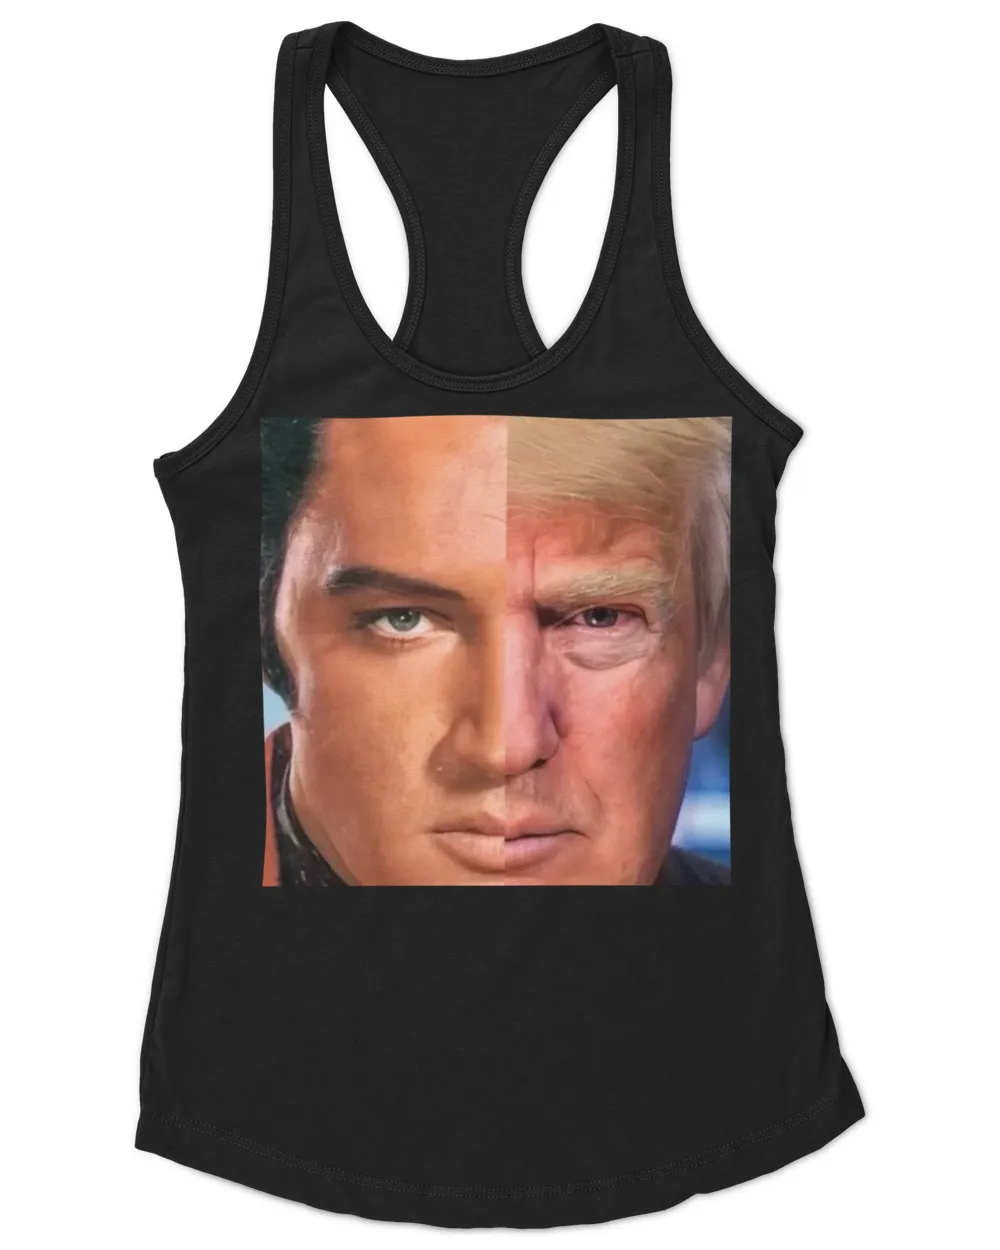 Elvis And Trump T-Shirt Poster Mug Hoodie Sweatshirt